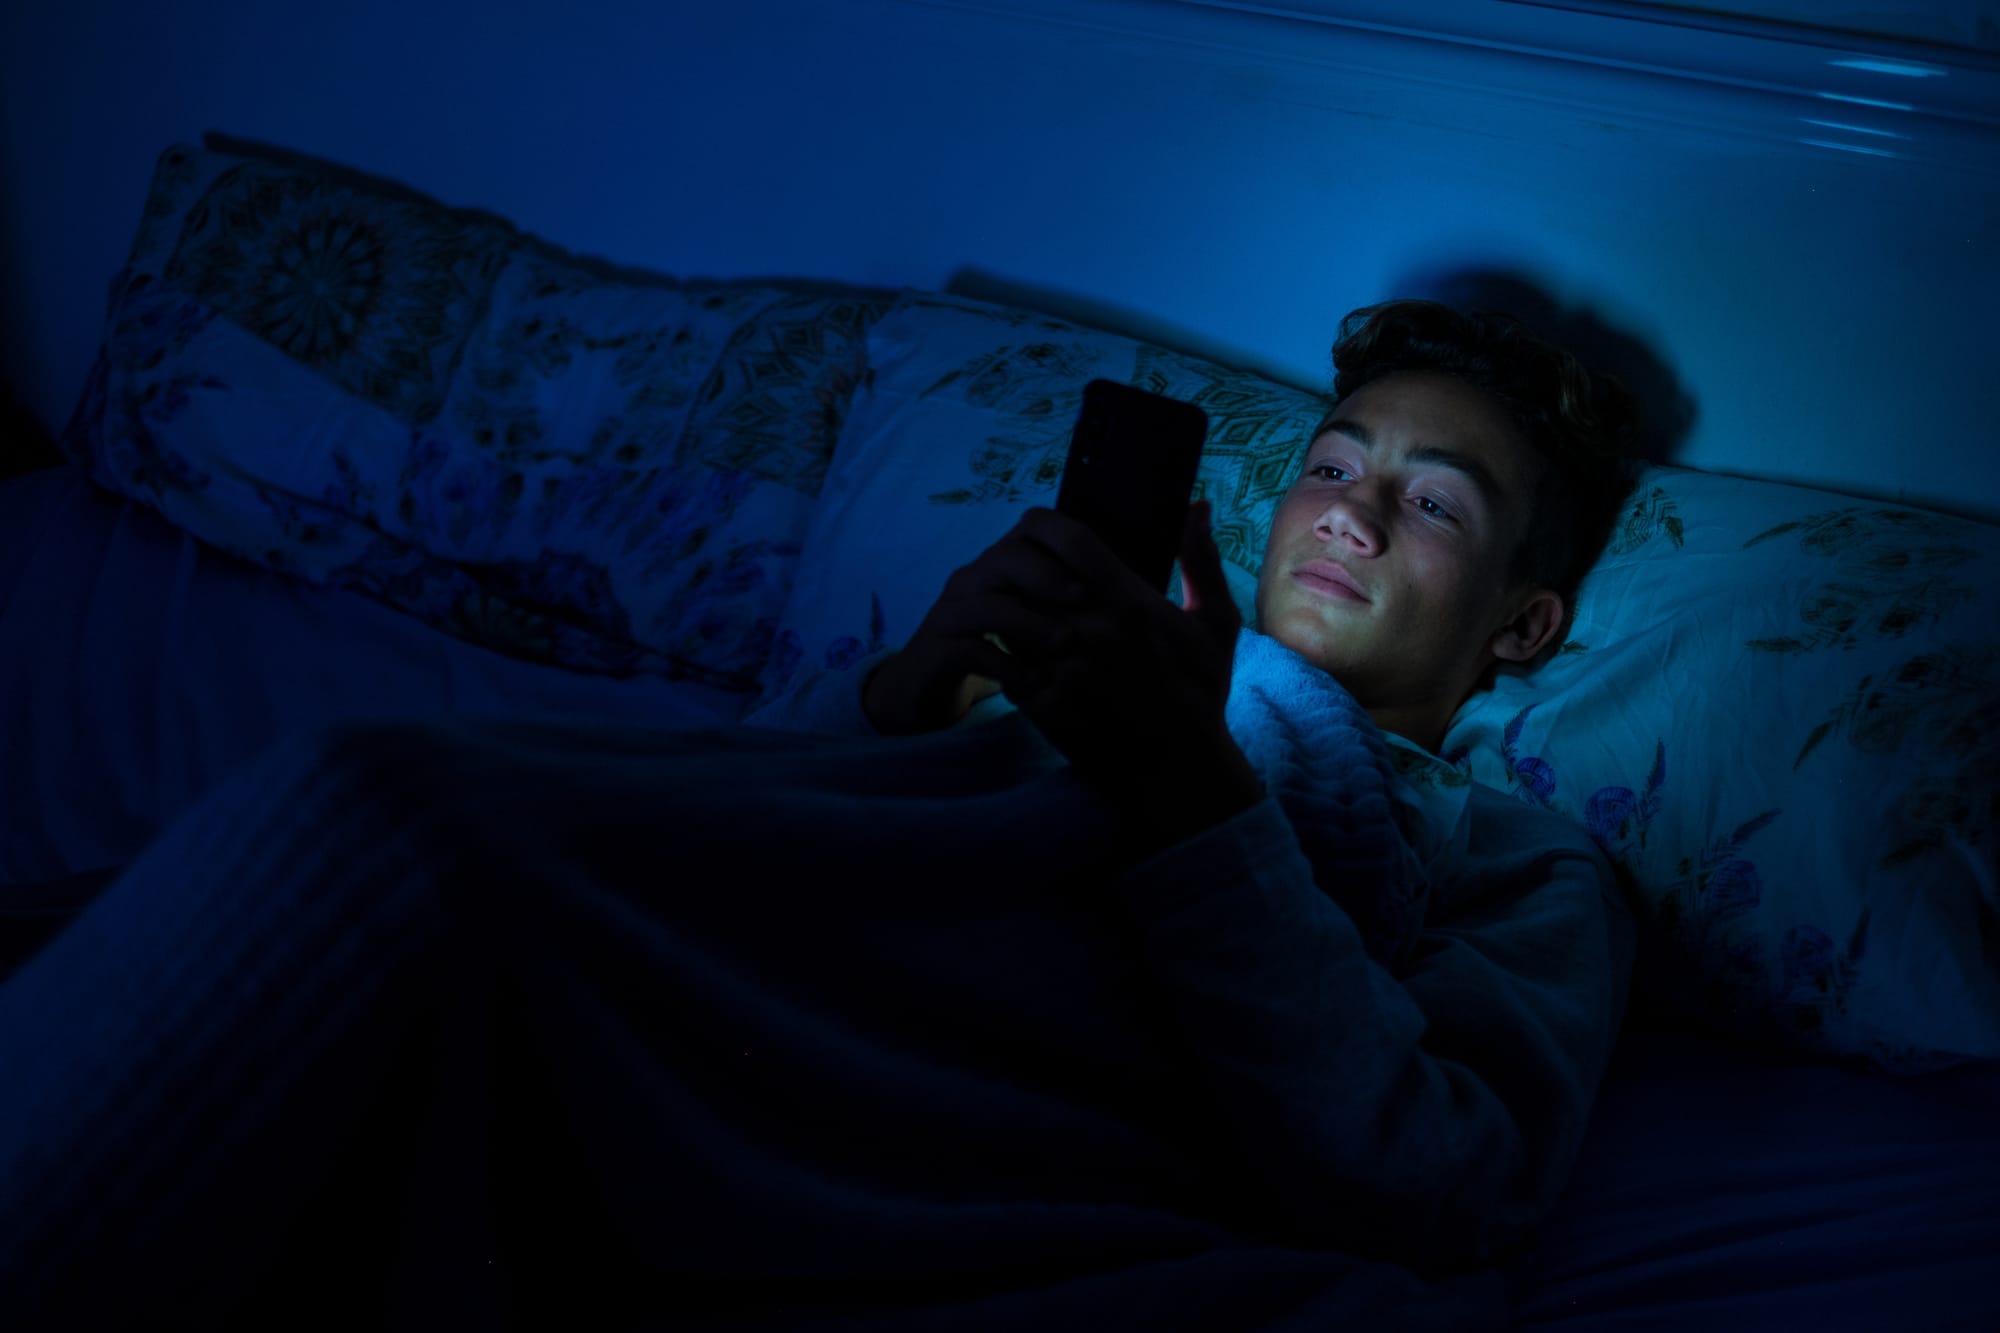 Teens and healthy sleep habits